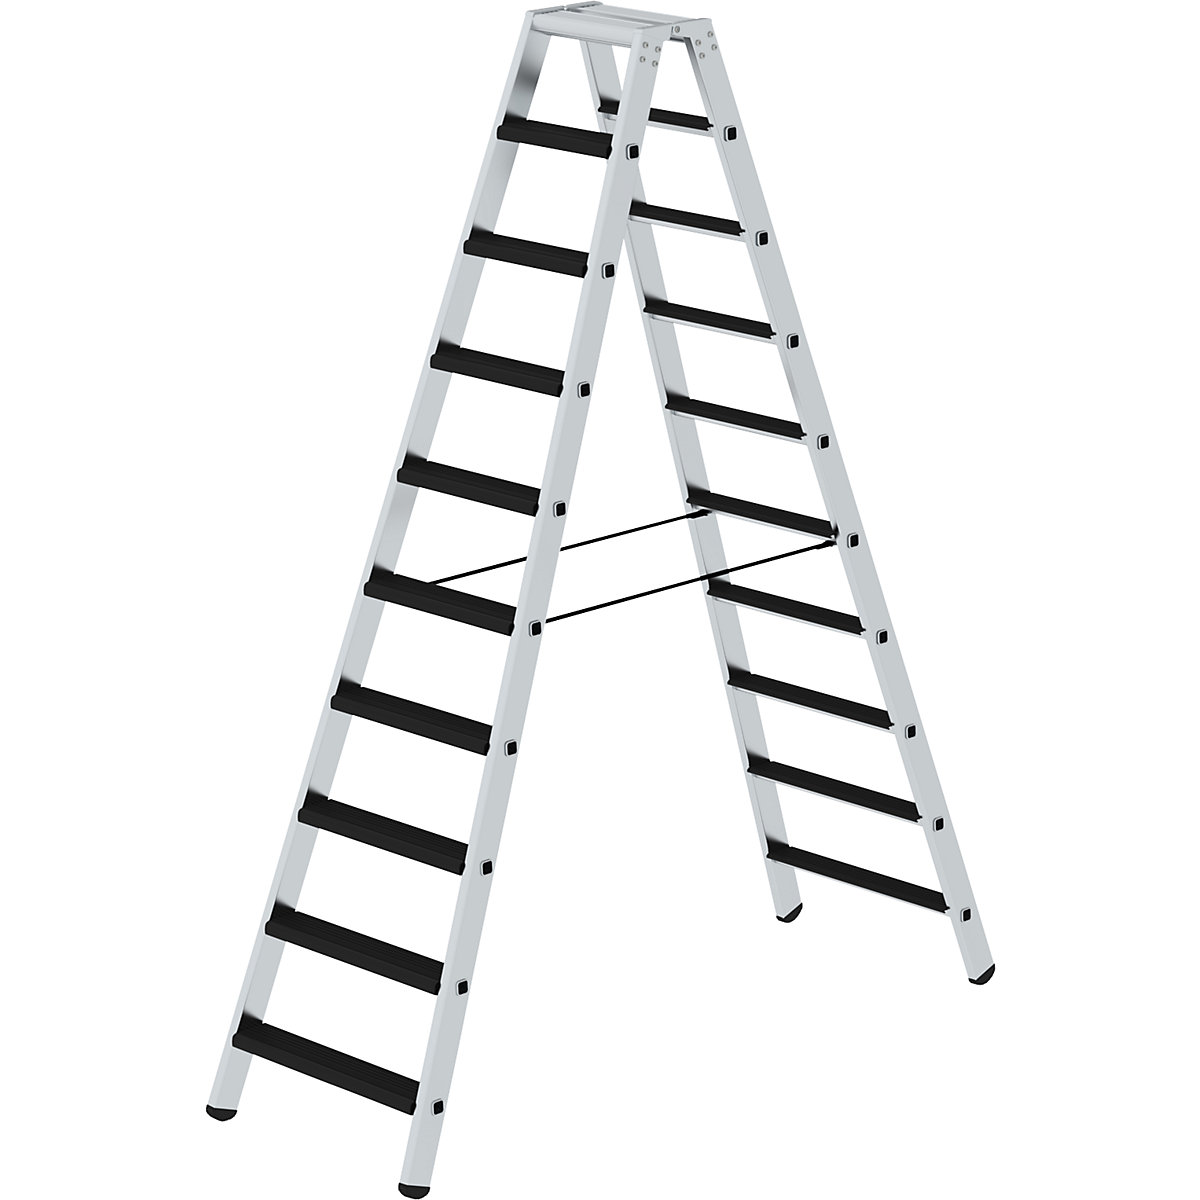 EUROKRAFTpro – Stojací rebrík so stupňami, obojstranný, čalúnené vyhotovenie, 2 x 10 stupňov